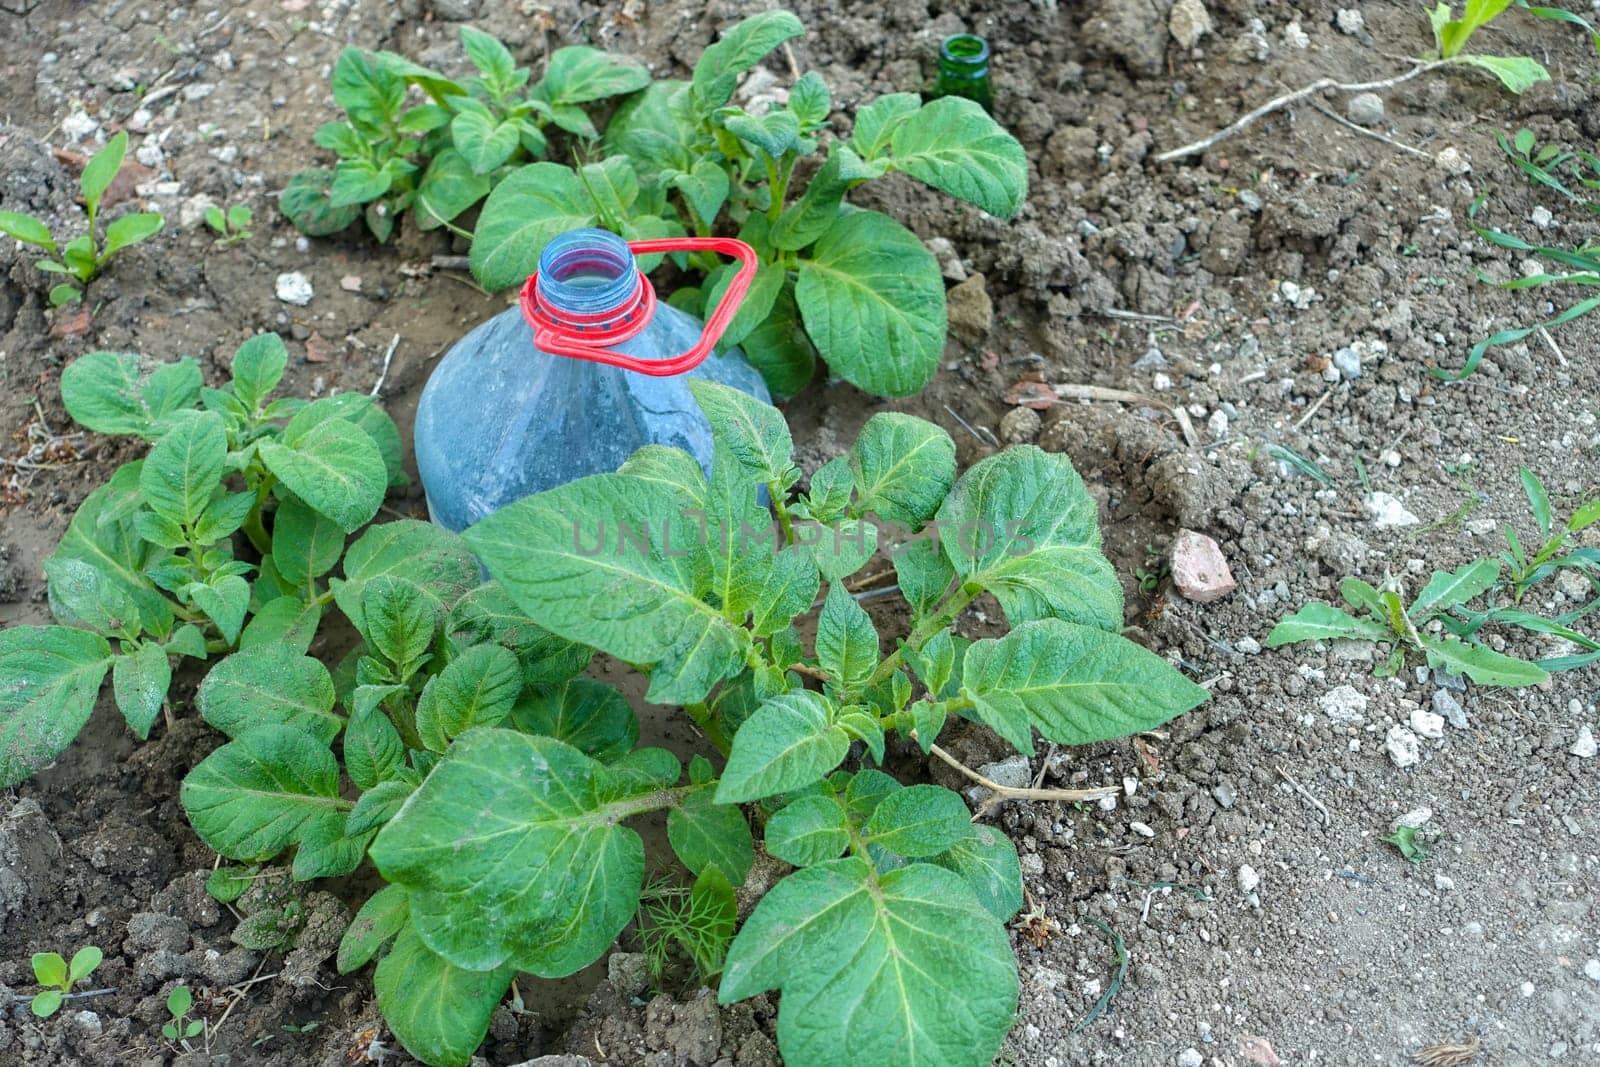 Potato cultivation using large pet bottles, potato cultivation by irrigating pet bottles,